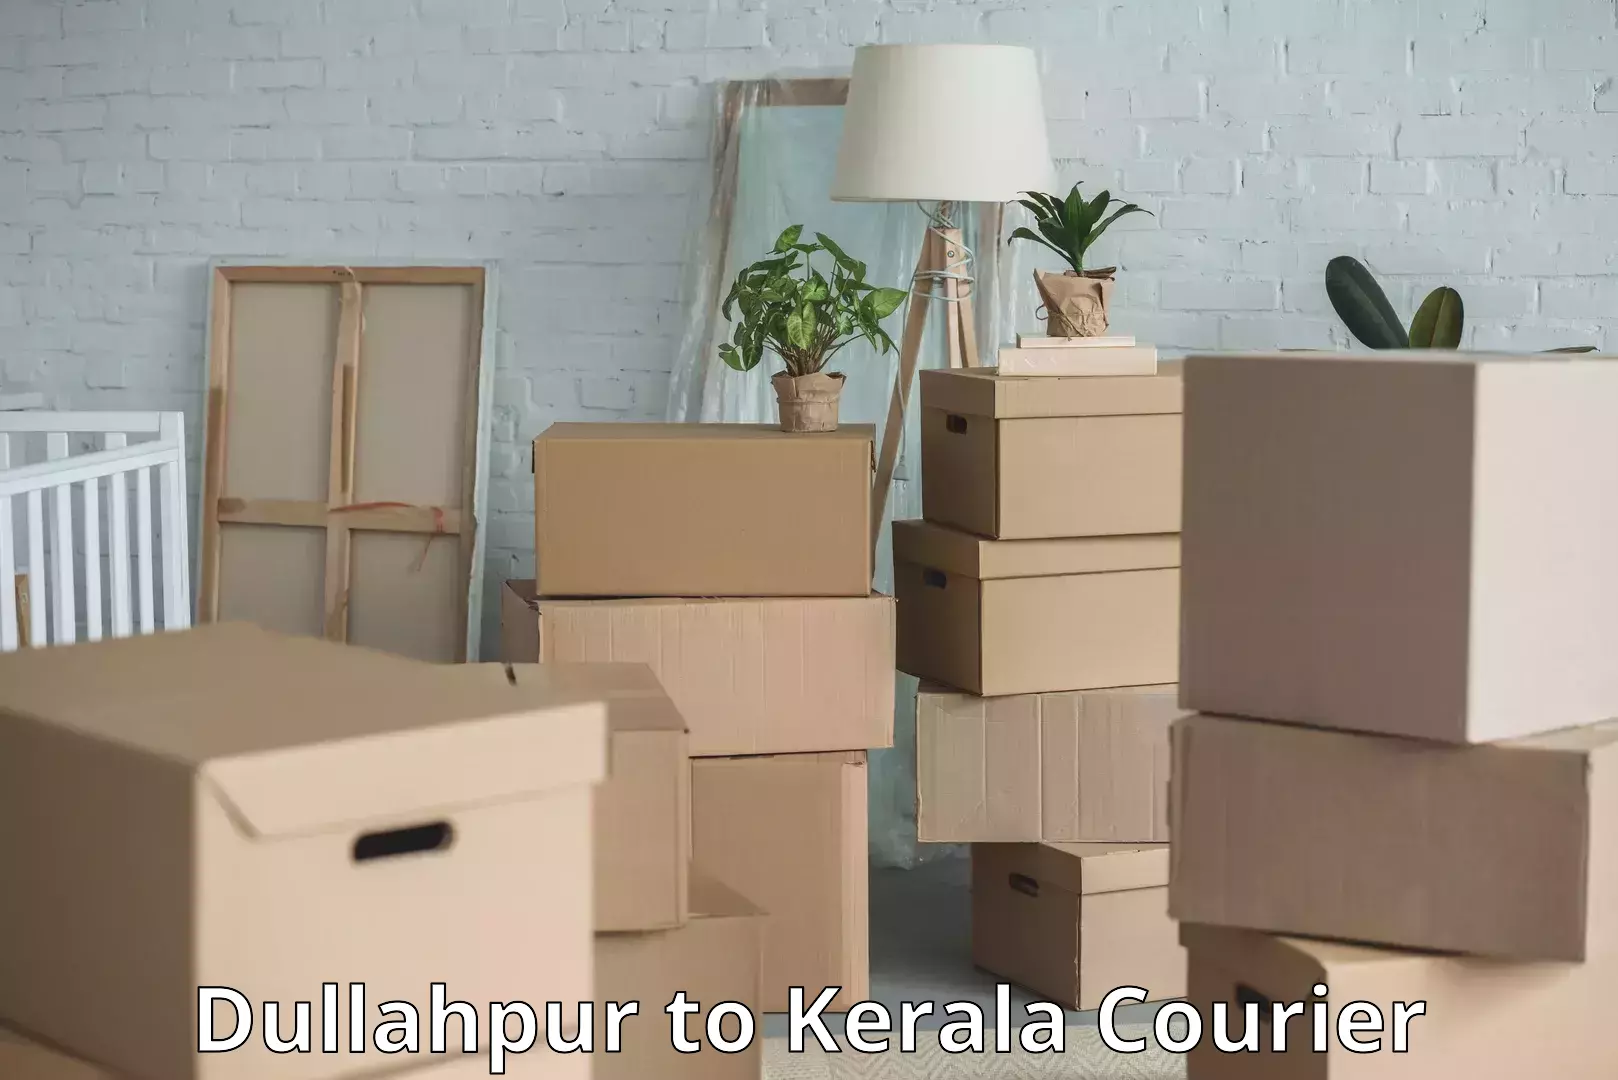 Doorstep luggage pickup Dullahpur to Kerala